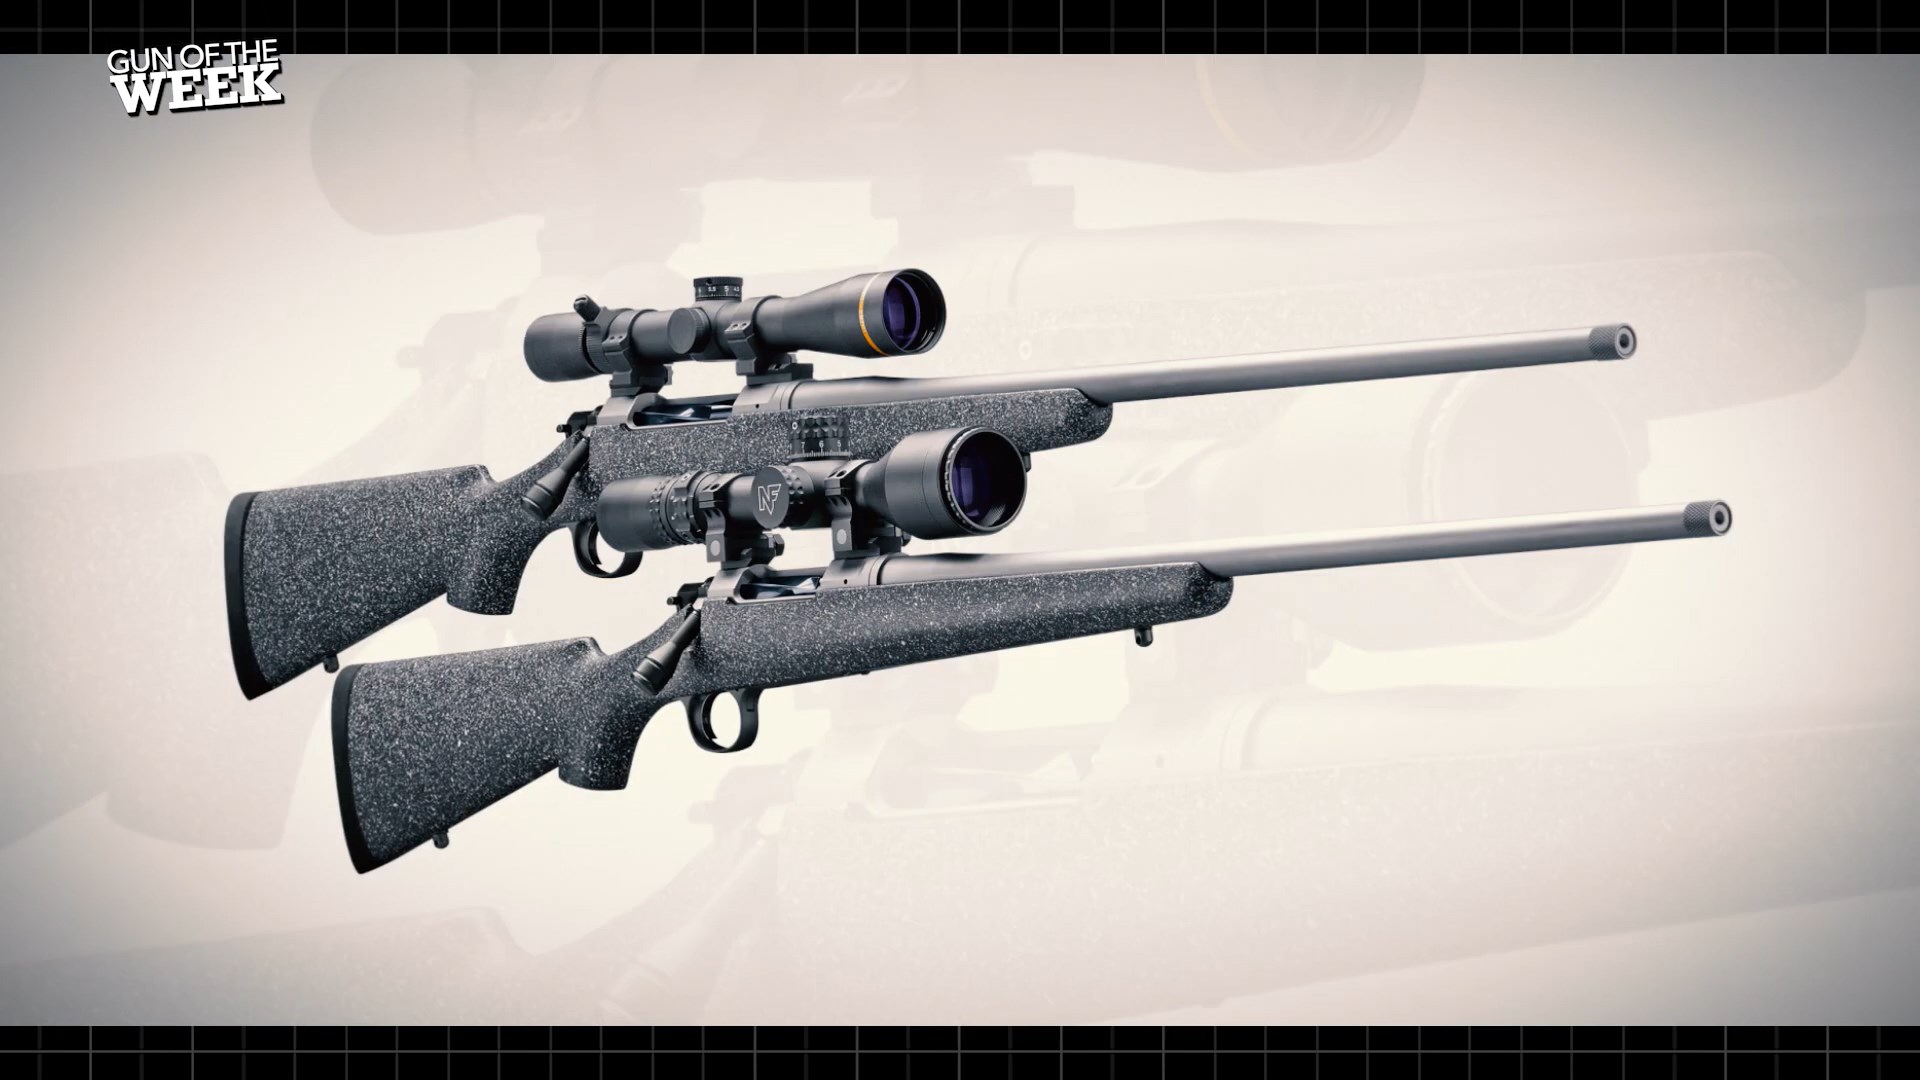 Nosler M21 bolt-action rifles stainless steel hunting guns carbon fiber stock riflescopes